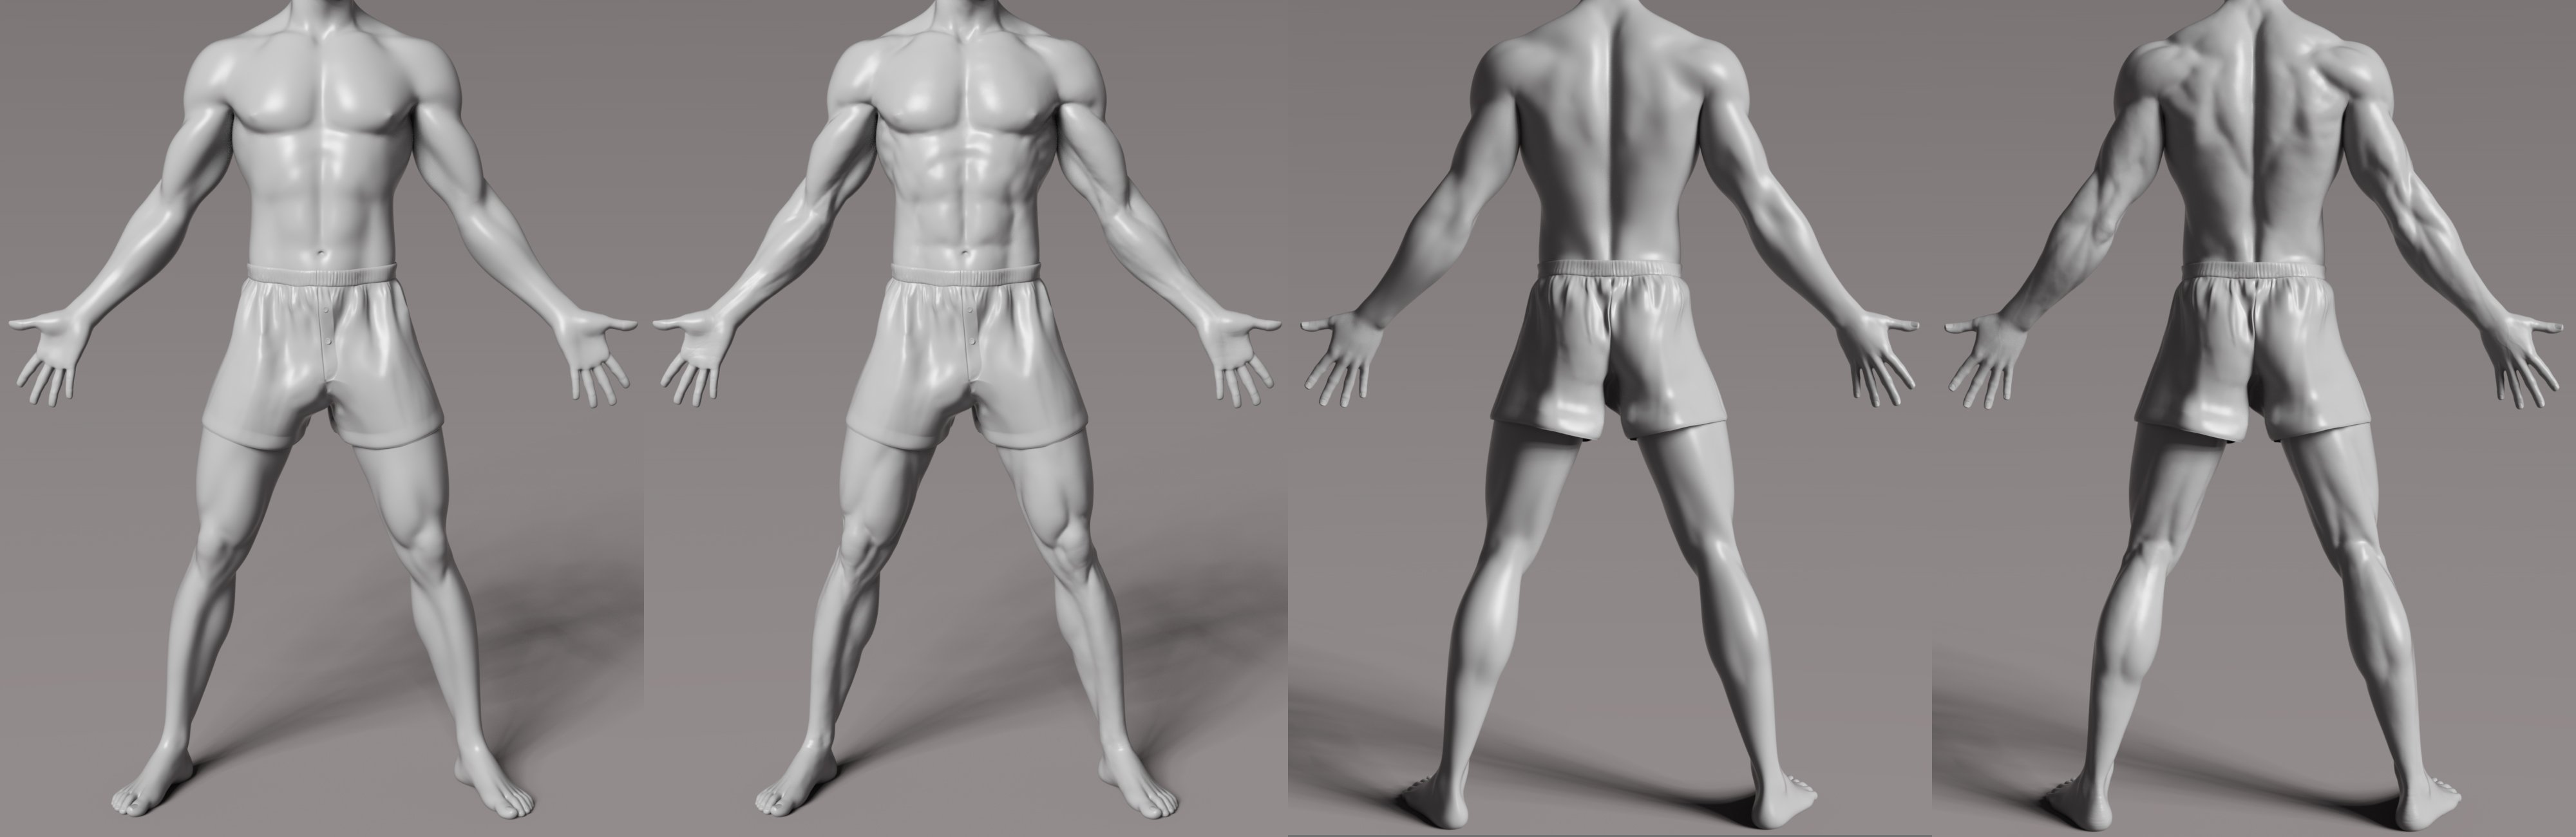 Linghu HD for Genesis 8.1 Male by: Goanna, 3D Models by Daz 3D